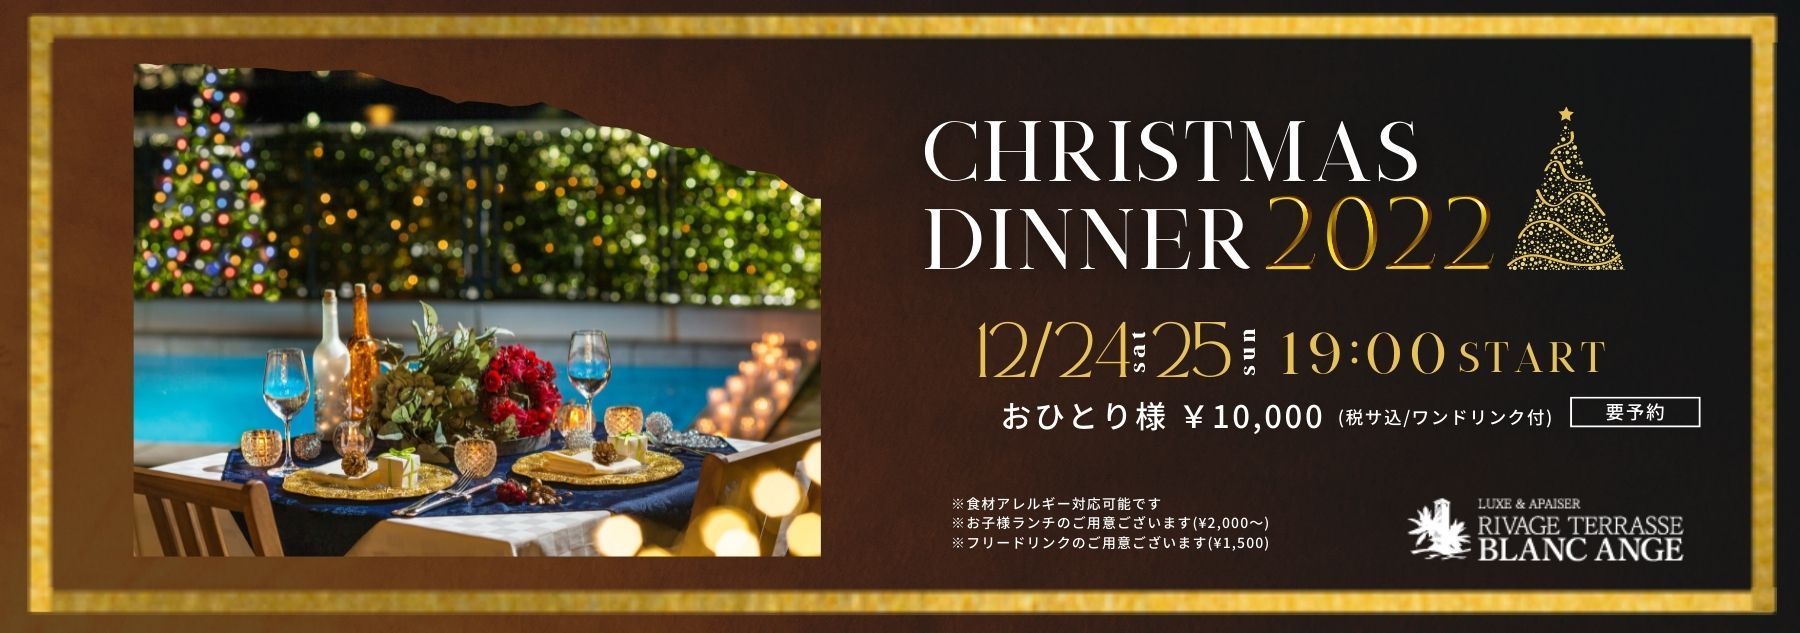 徳島県で人気の料理がおいしいクリスマスディナー